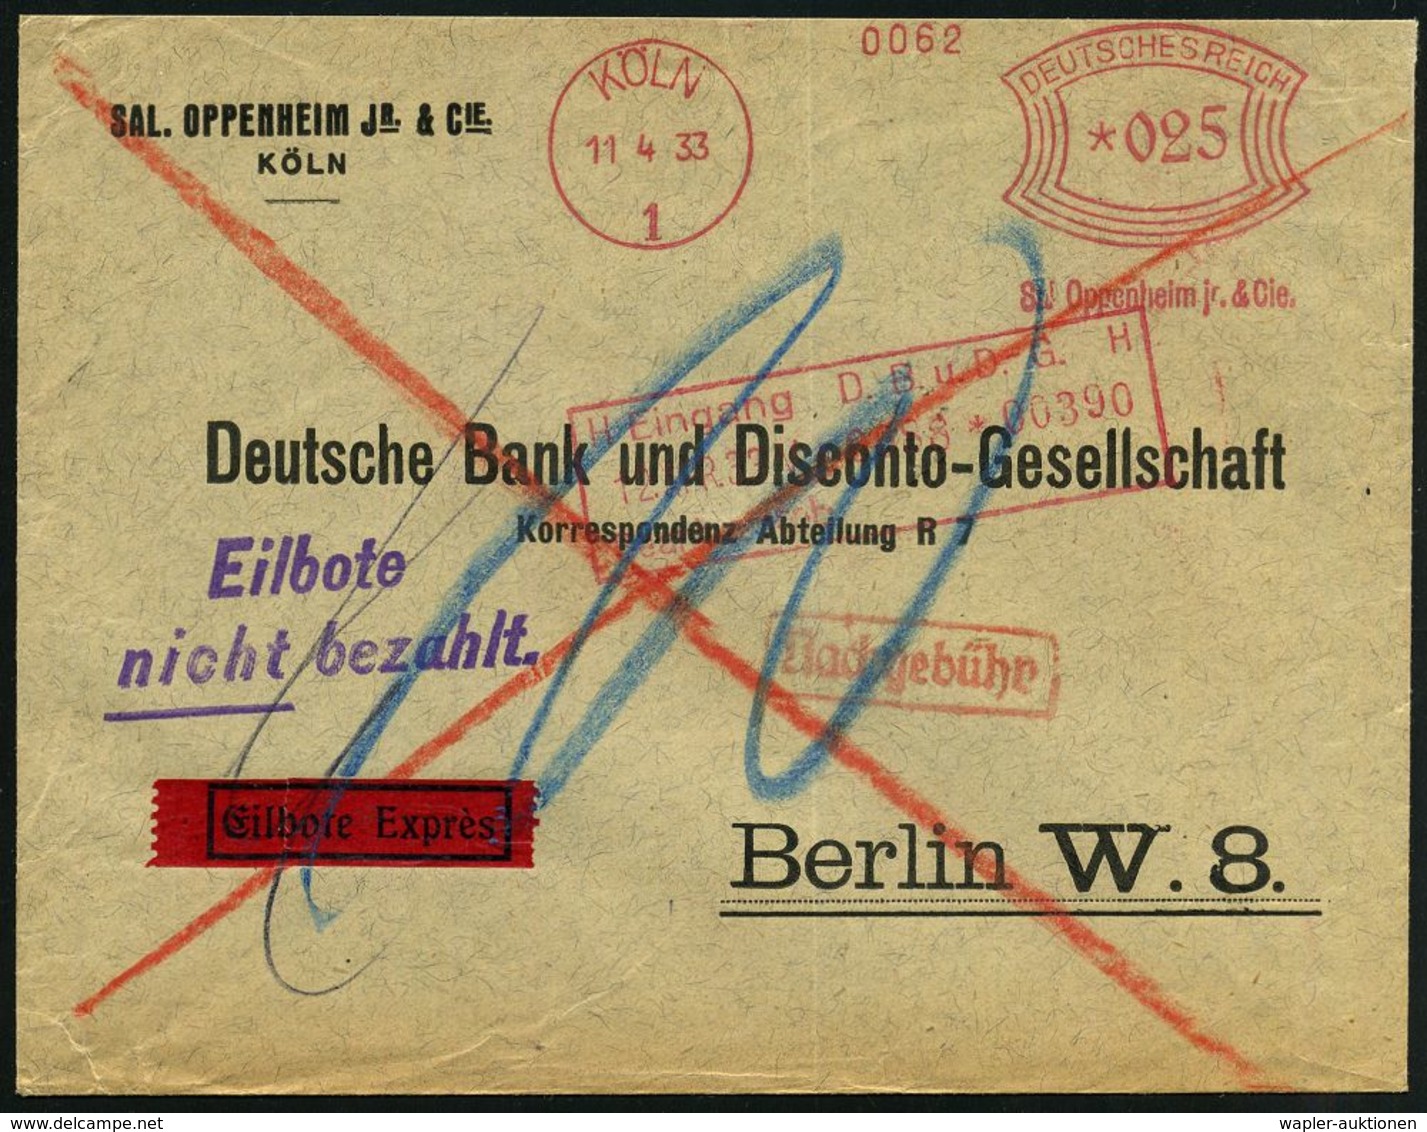 JUDAICA / JÜDISCHE GESCHICHTE / ZIONISMUS : KÖLN/ 1/ Sal.Oppenheim Jr. & Cie. 1933 (11.4.) AFS 025 Pf. = Deutsch-jüdisch - Guidaismo